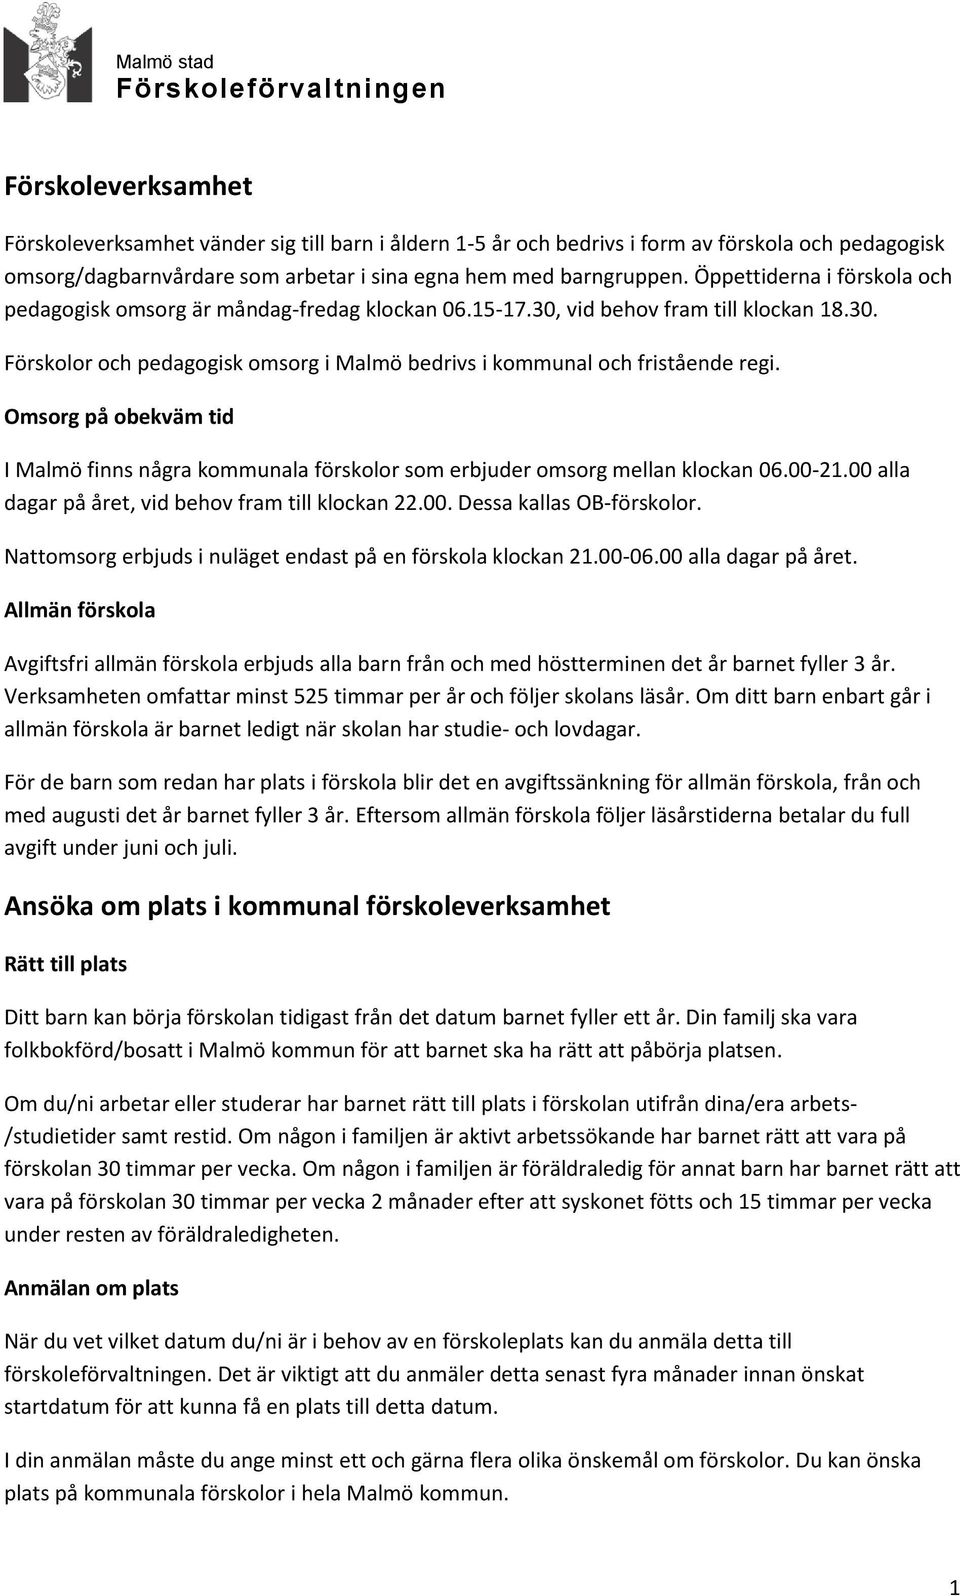 Omsorg på obekväm tid I Malmö finns några kommunala förskolor som erbjuder omsorg mellan klockan 06.00-21.00 alla dagar på året, vid behov fram till klockan 22.00. Dessa kallas OB-förskolor.